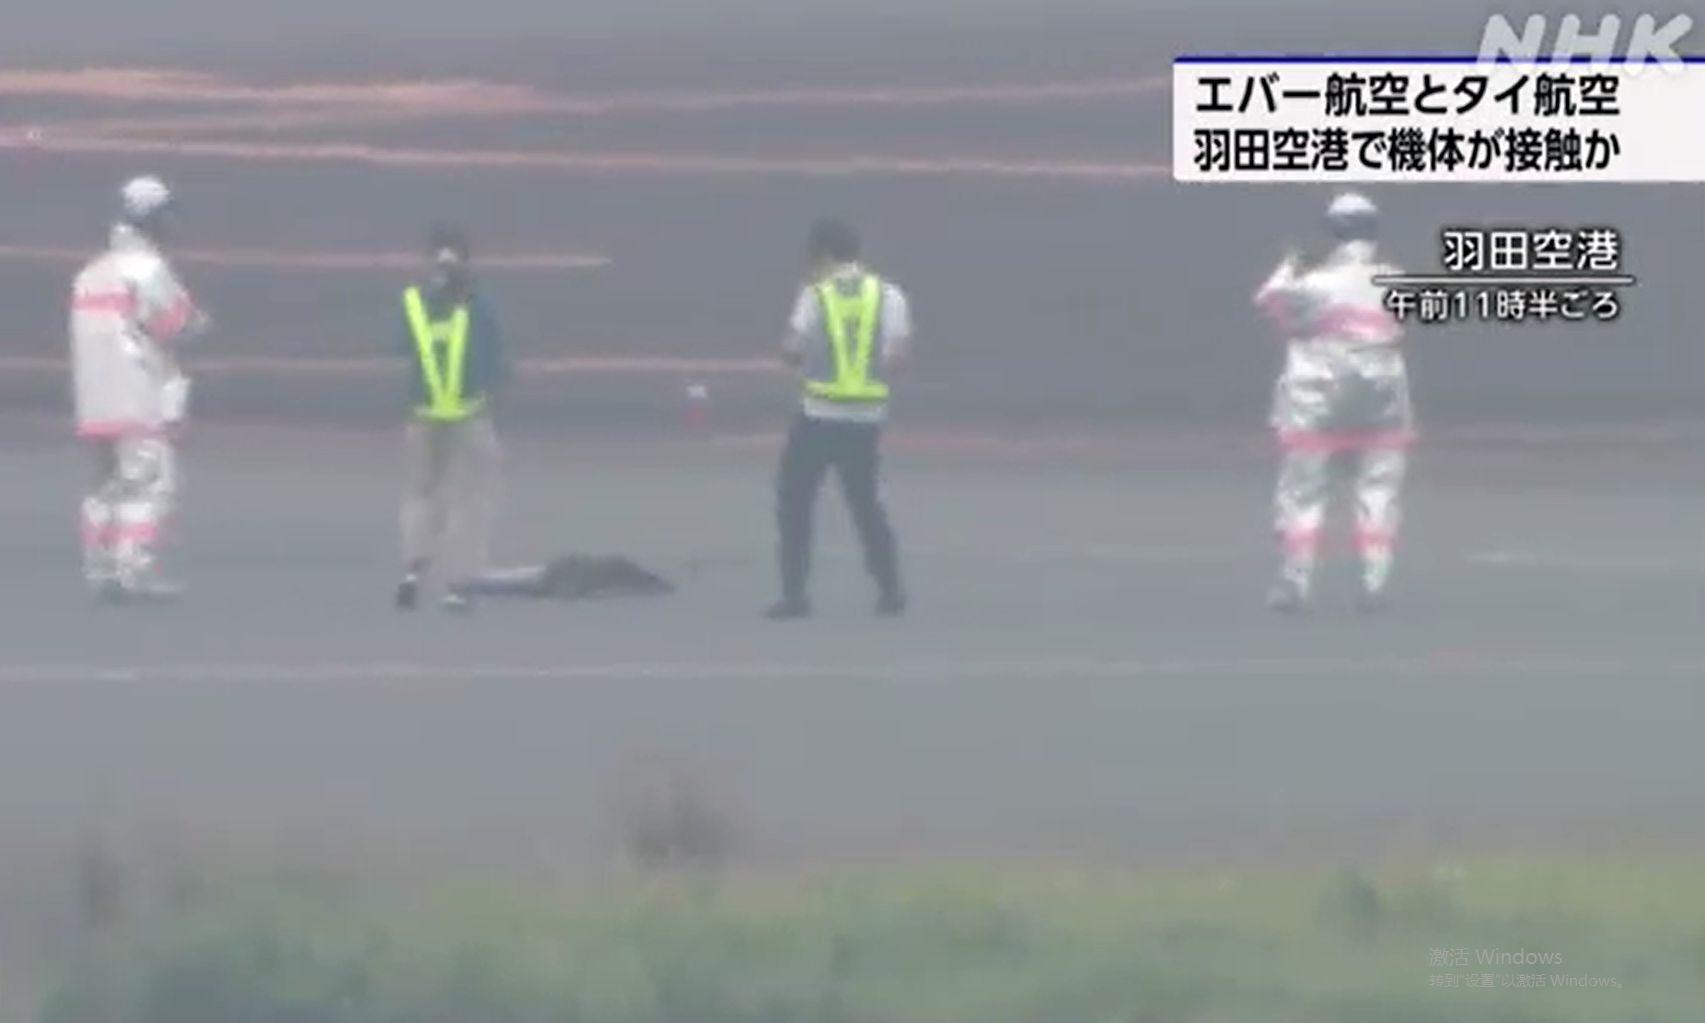 日本东京羽田机场两架飞机擦撞 泰国航空飞机撞上长荣航空飞机